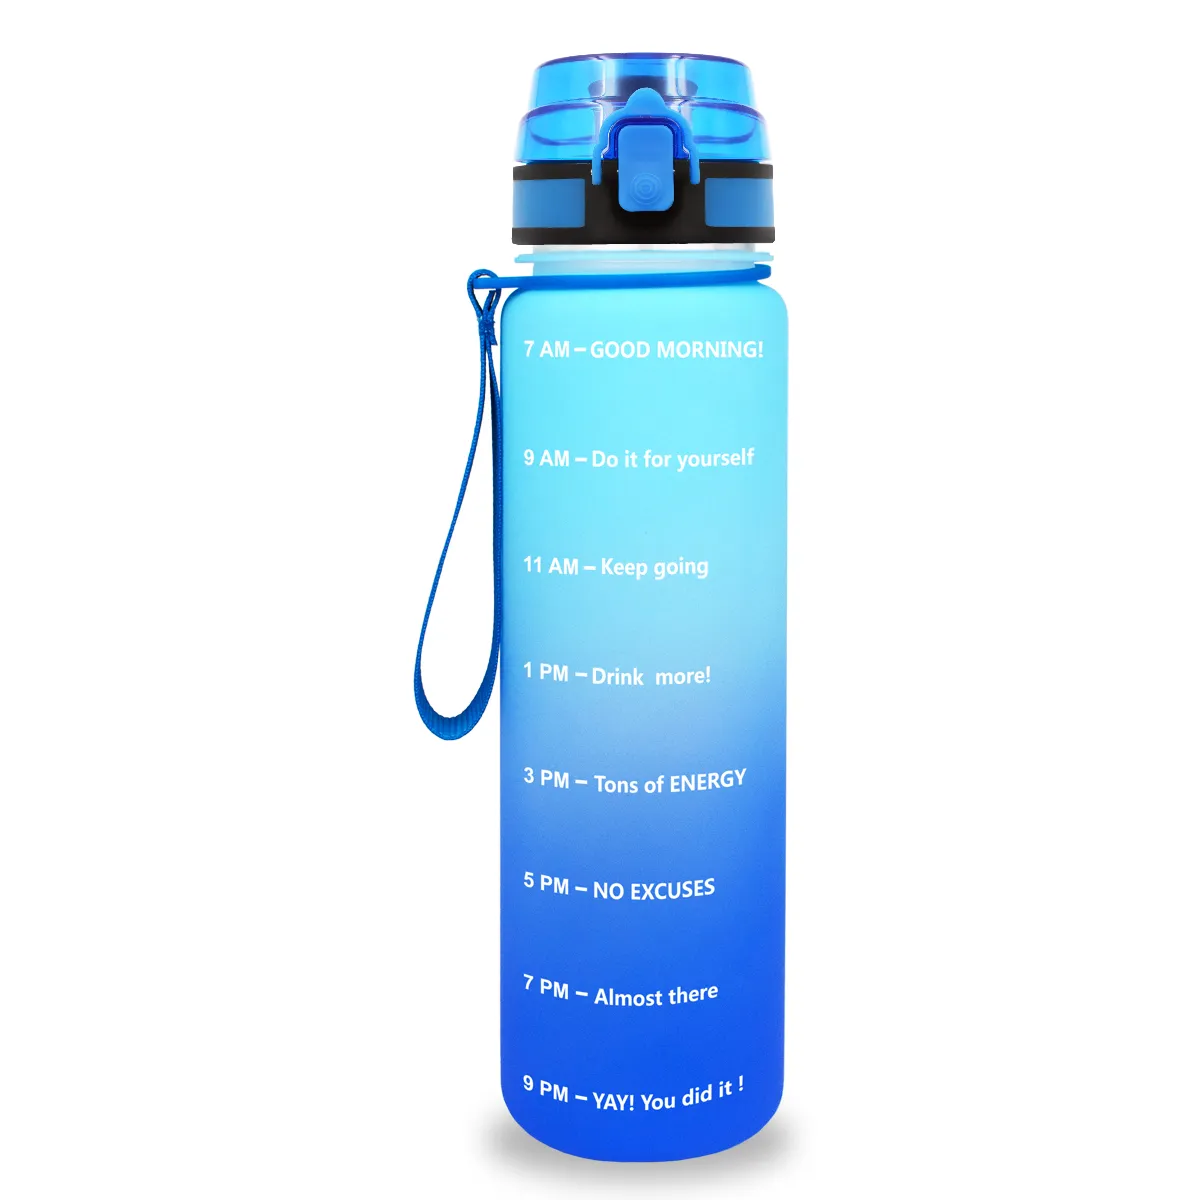 Botella de agua Quifit a prueba de fugas Tritran sin BPA con marcador de tiempo motivacional Flip-Flop para garantizar beber suficiente diariamente